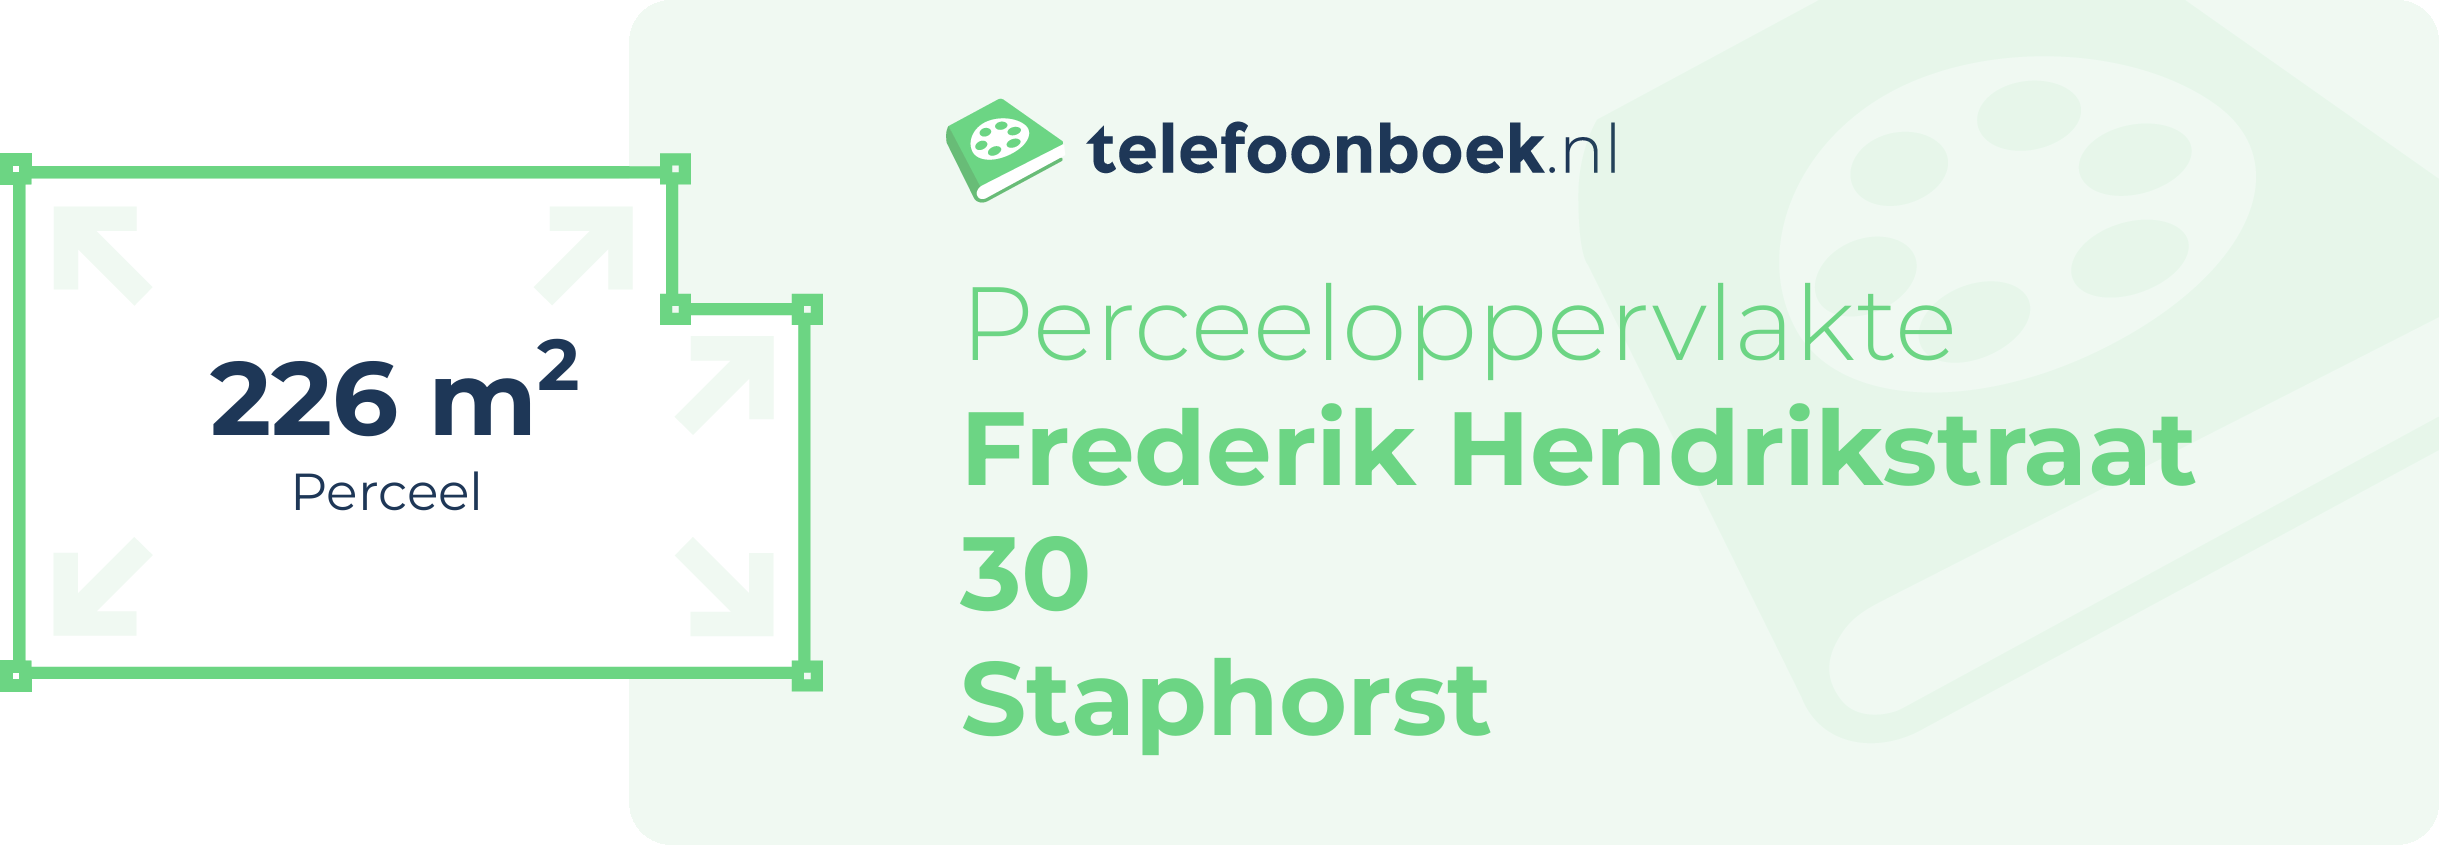 Perceeloppervlakte Frederik Hendrikstraat 30 Staphorst